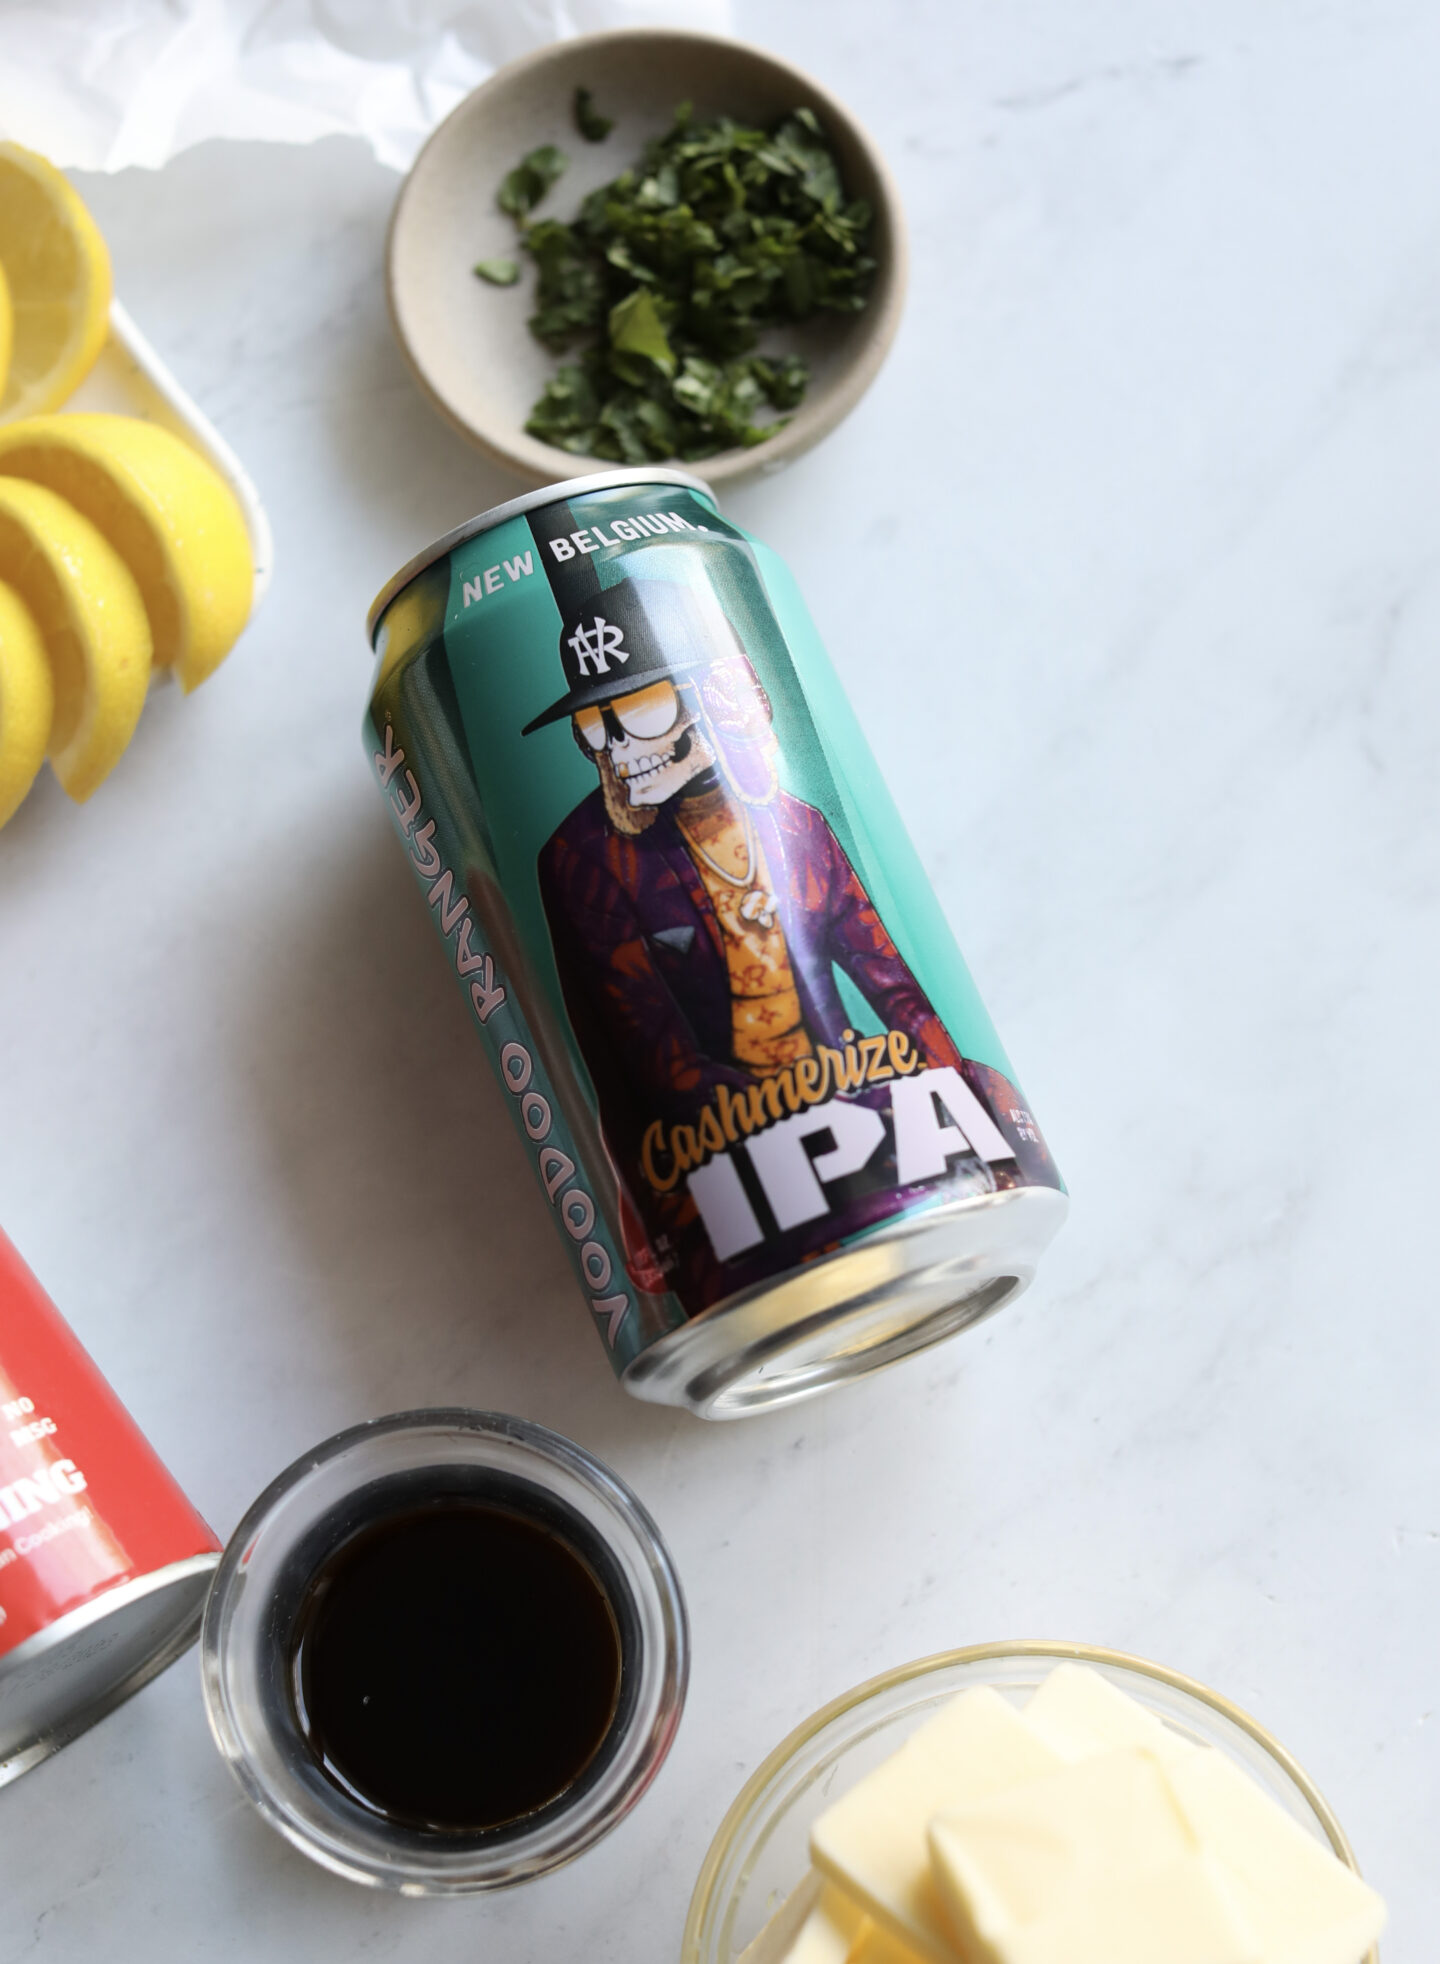 IPA beer among assorted ingredients